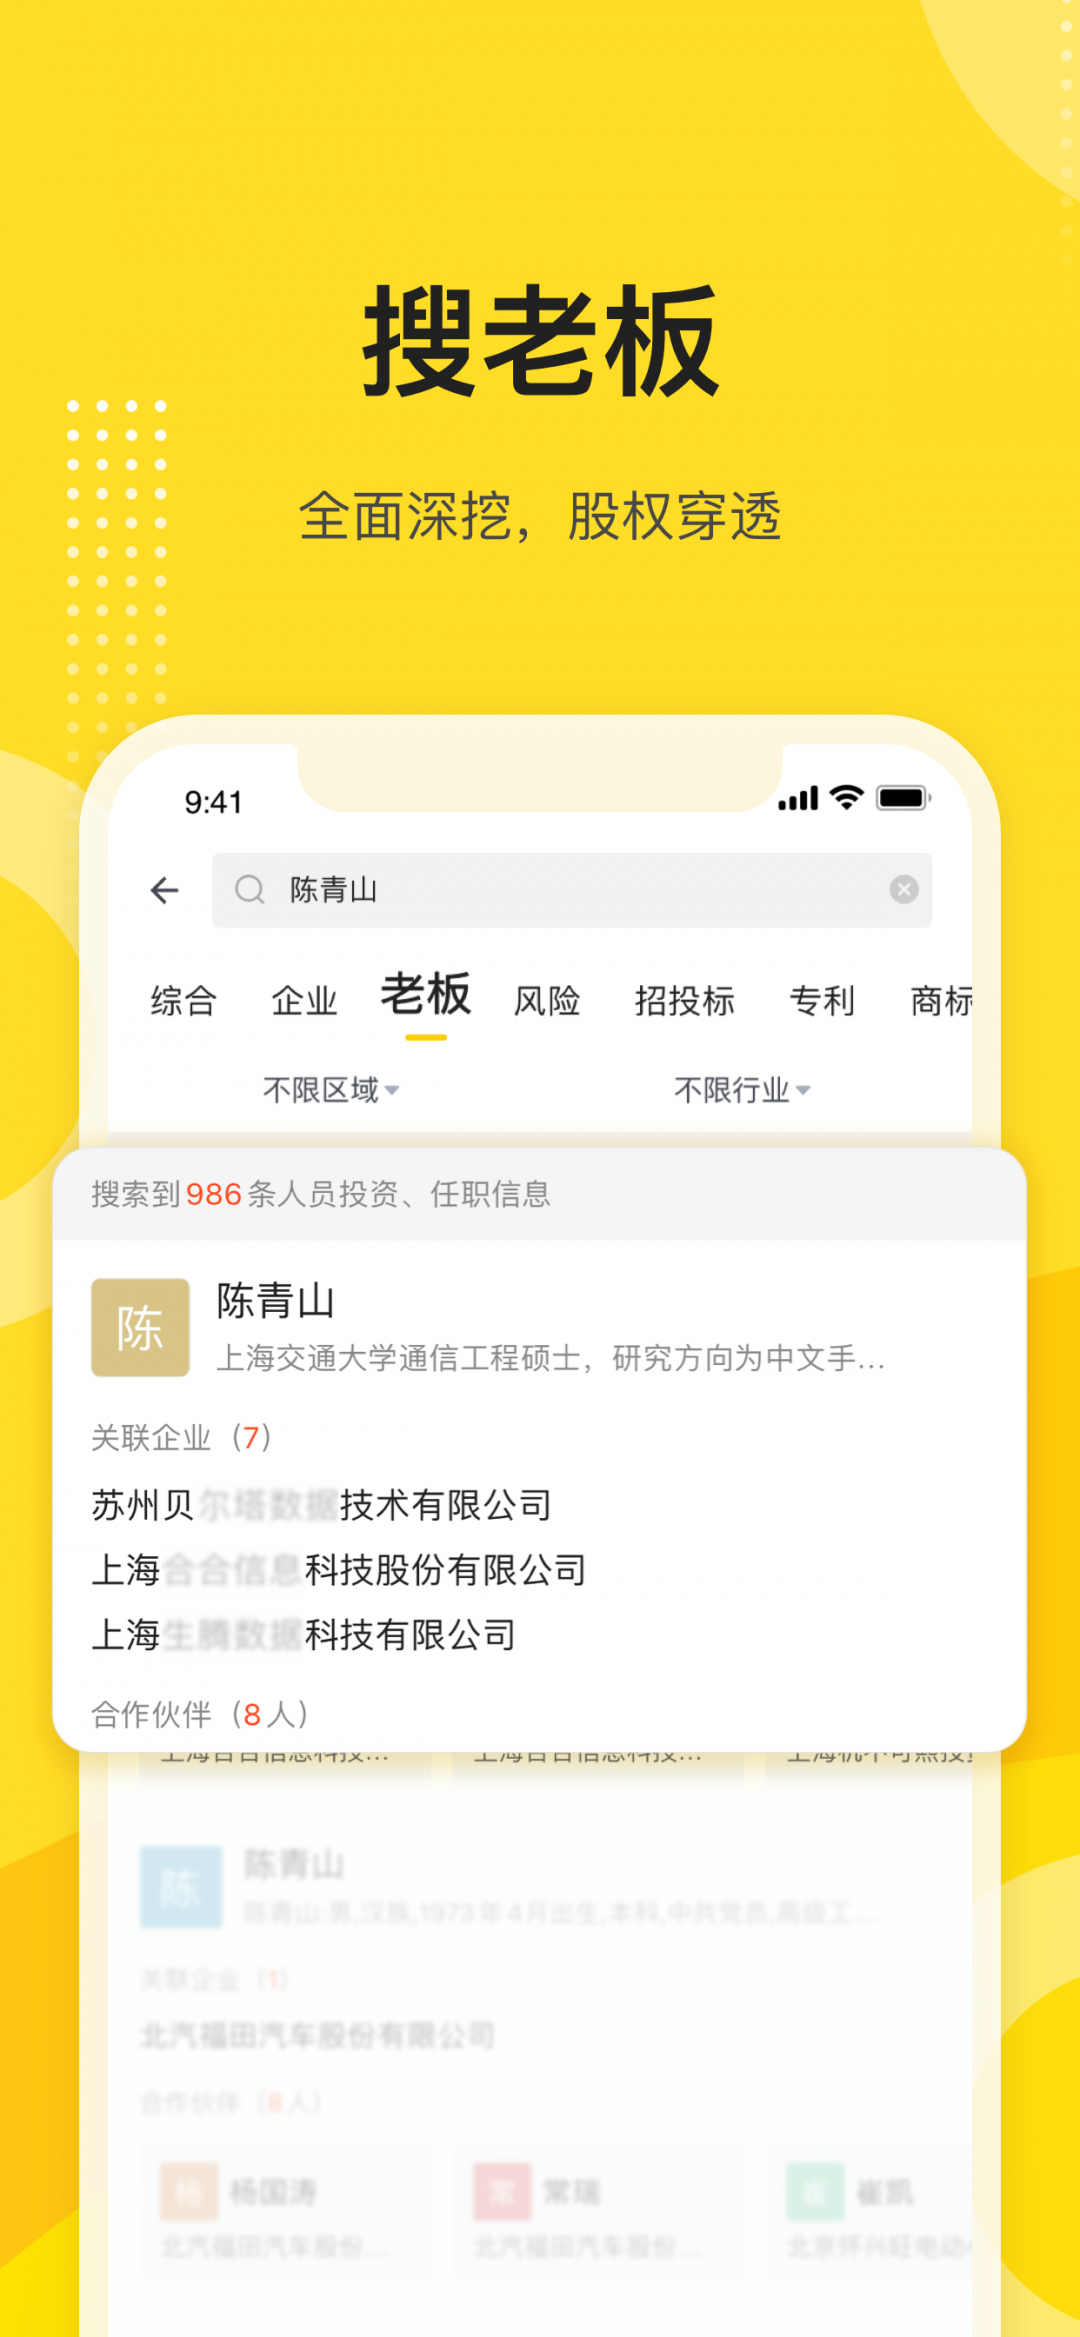 启信宝app下载安装下载,启信宝app下载安装最新版 v9.18.01